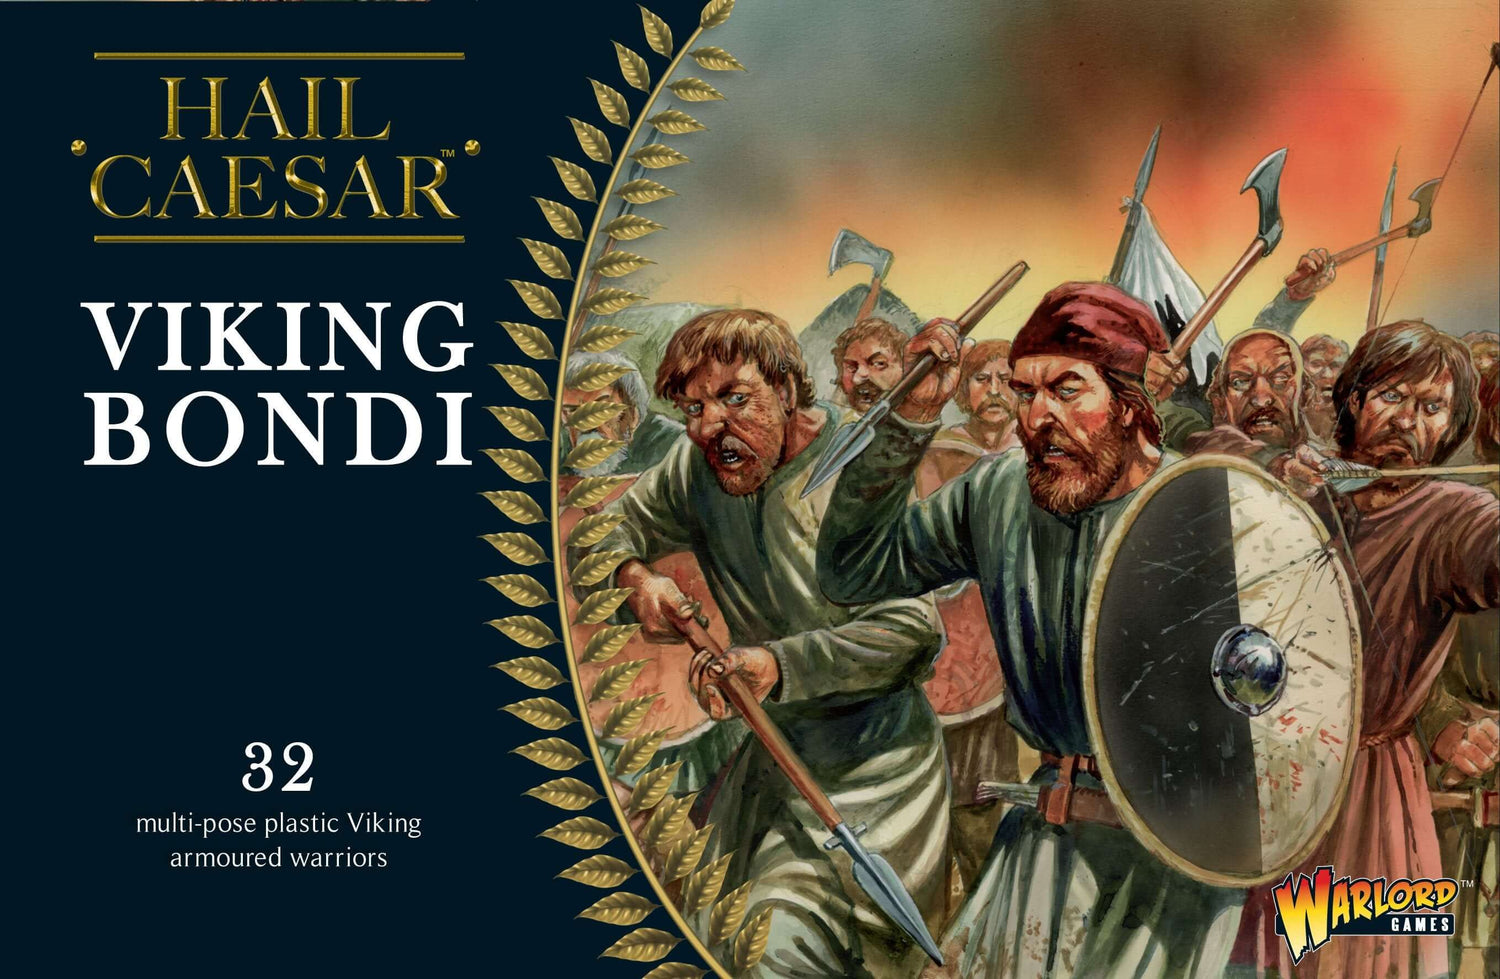 Hail Caesar, Viking Bondi by Warlord